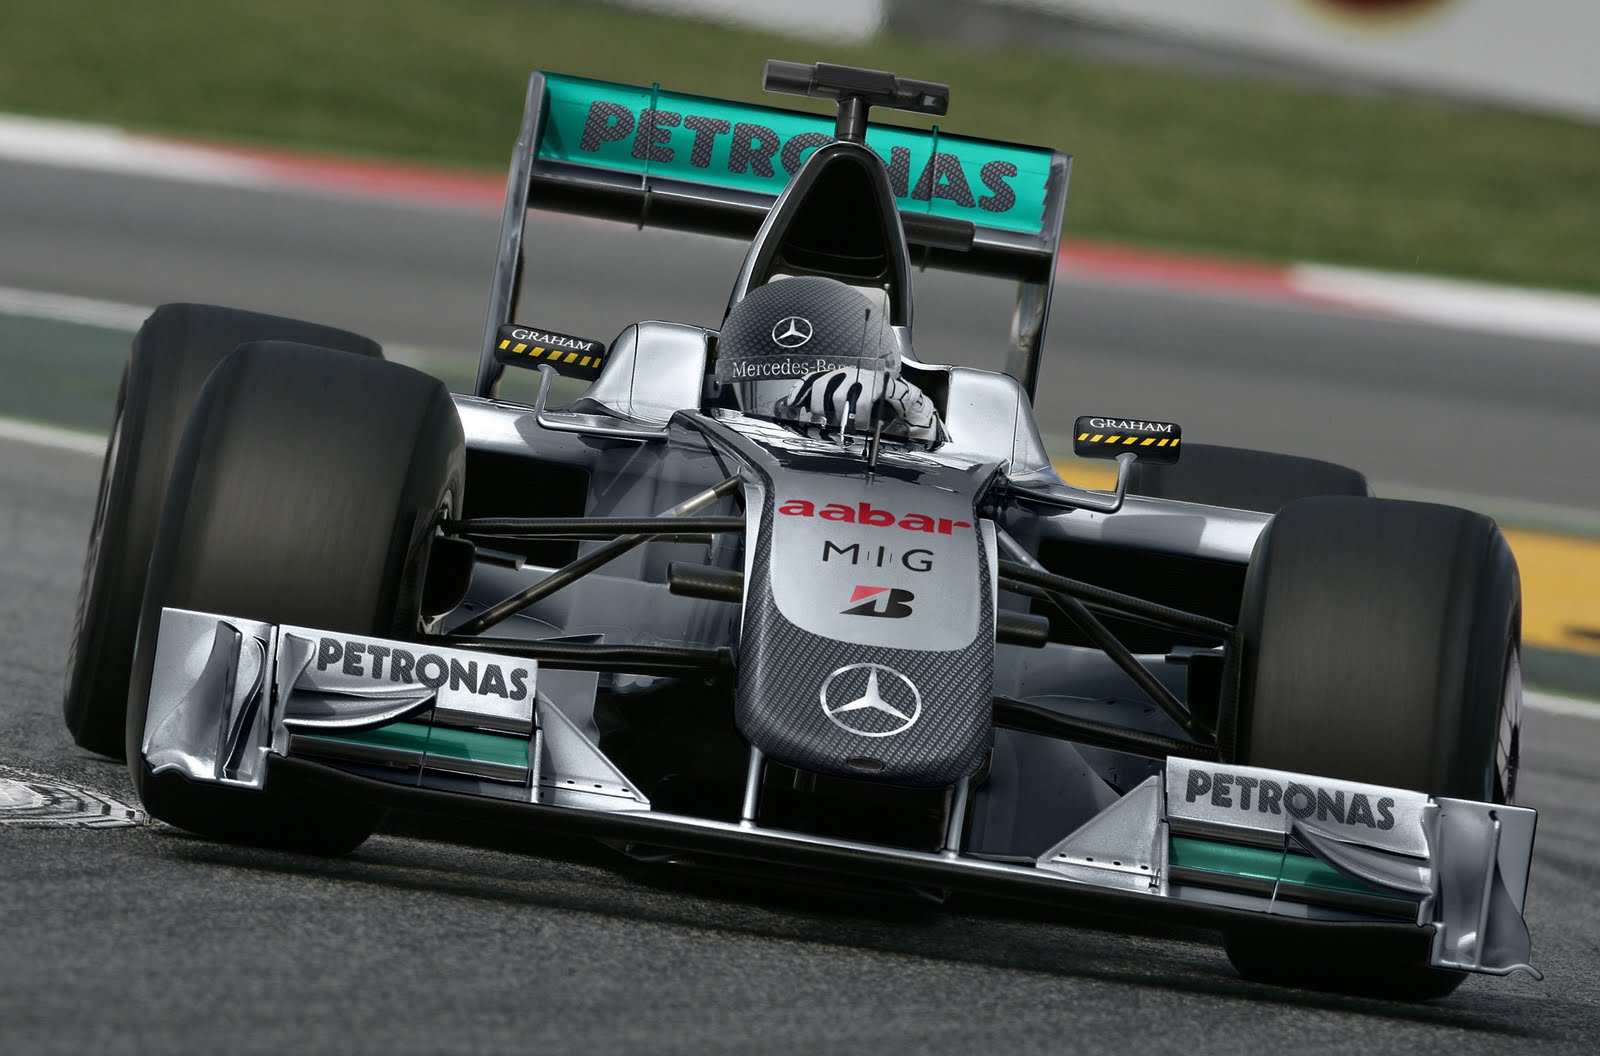 Mercedes benz formula 1 racing team #6